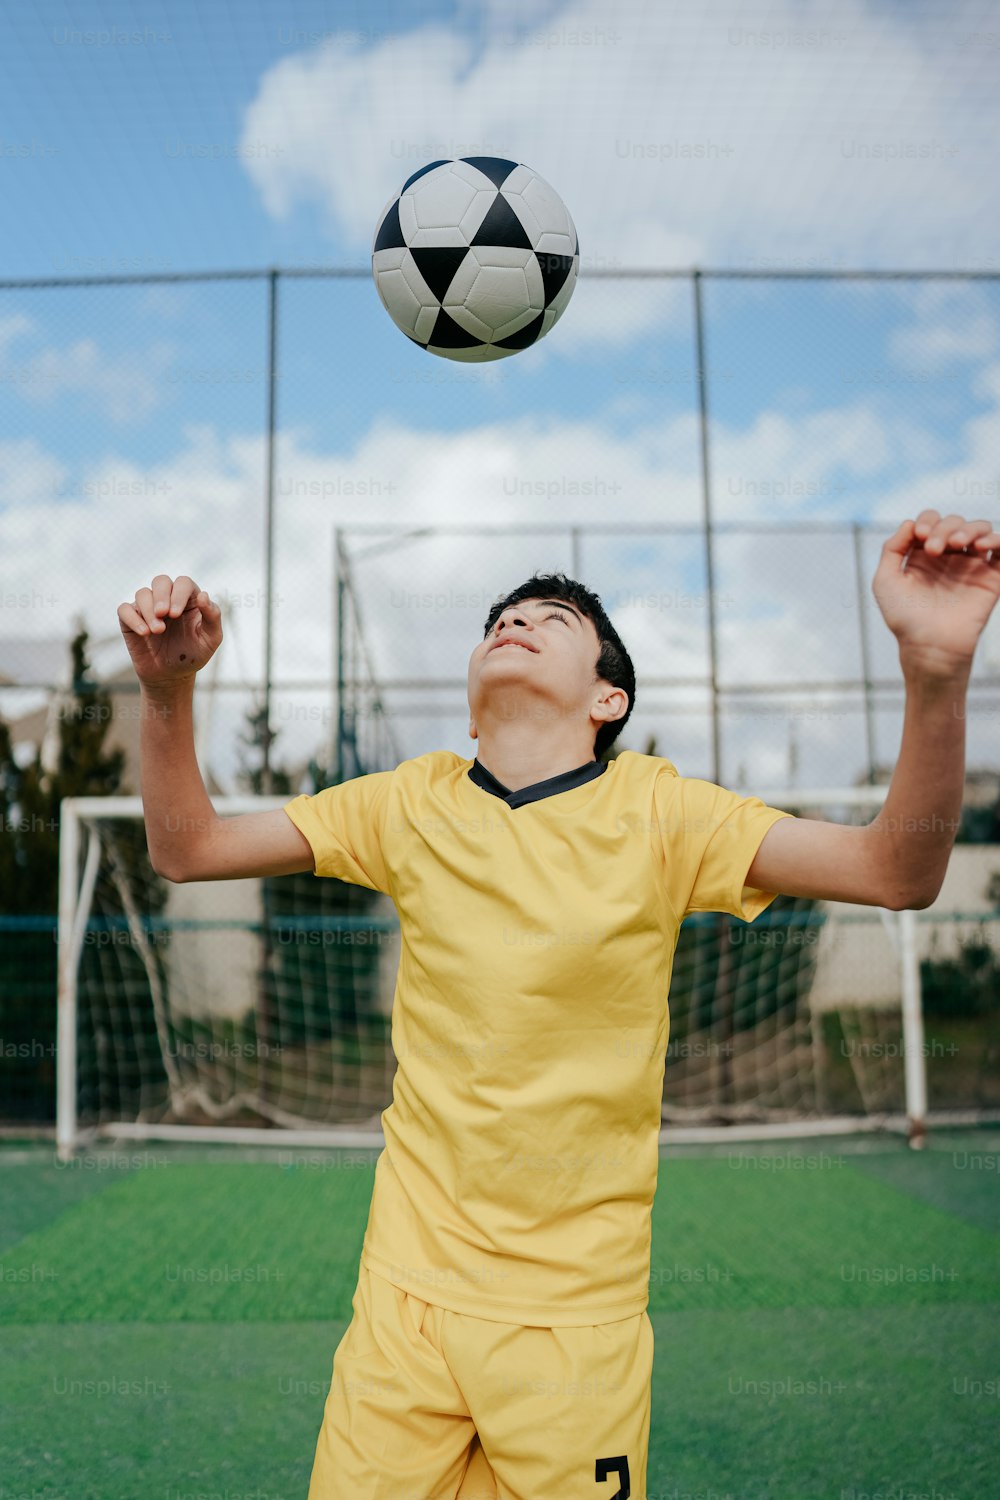 黄色い制服を着た若い男がサッカーボールをキャッチするために手を伸ばす